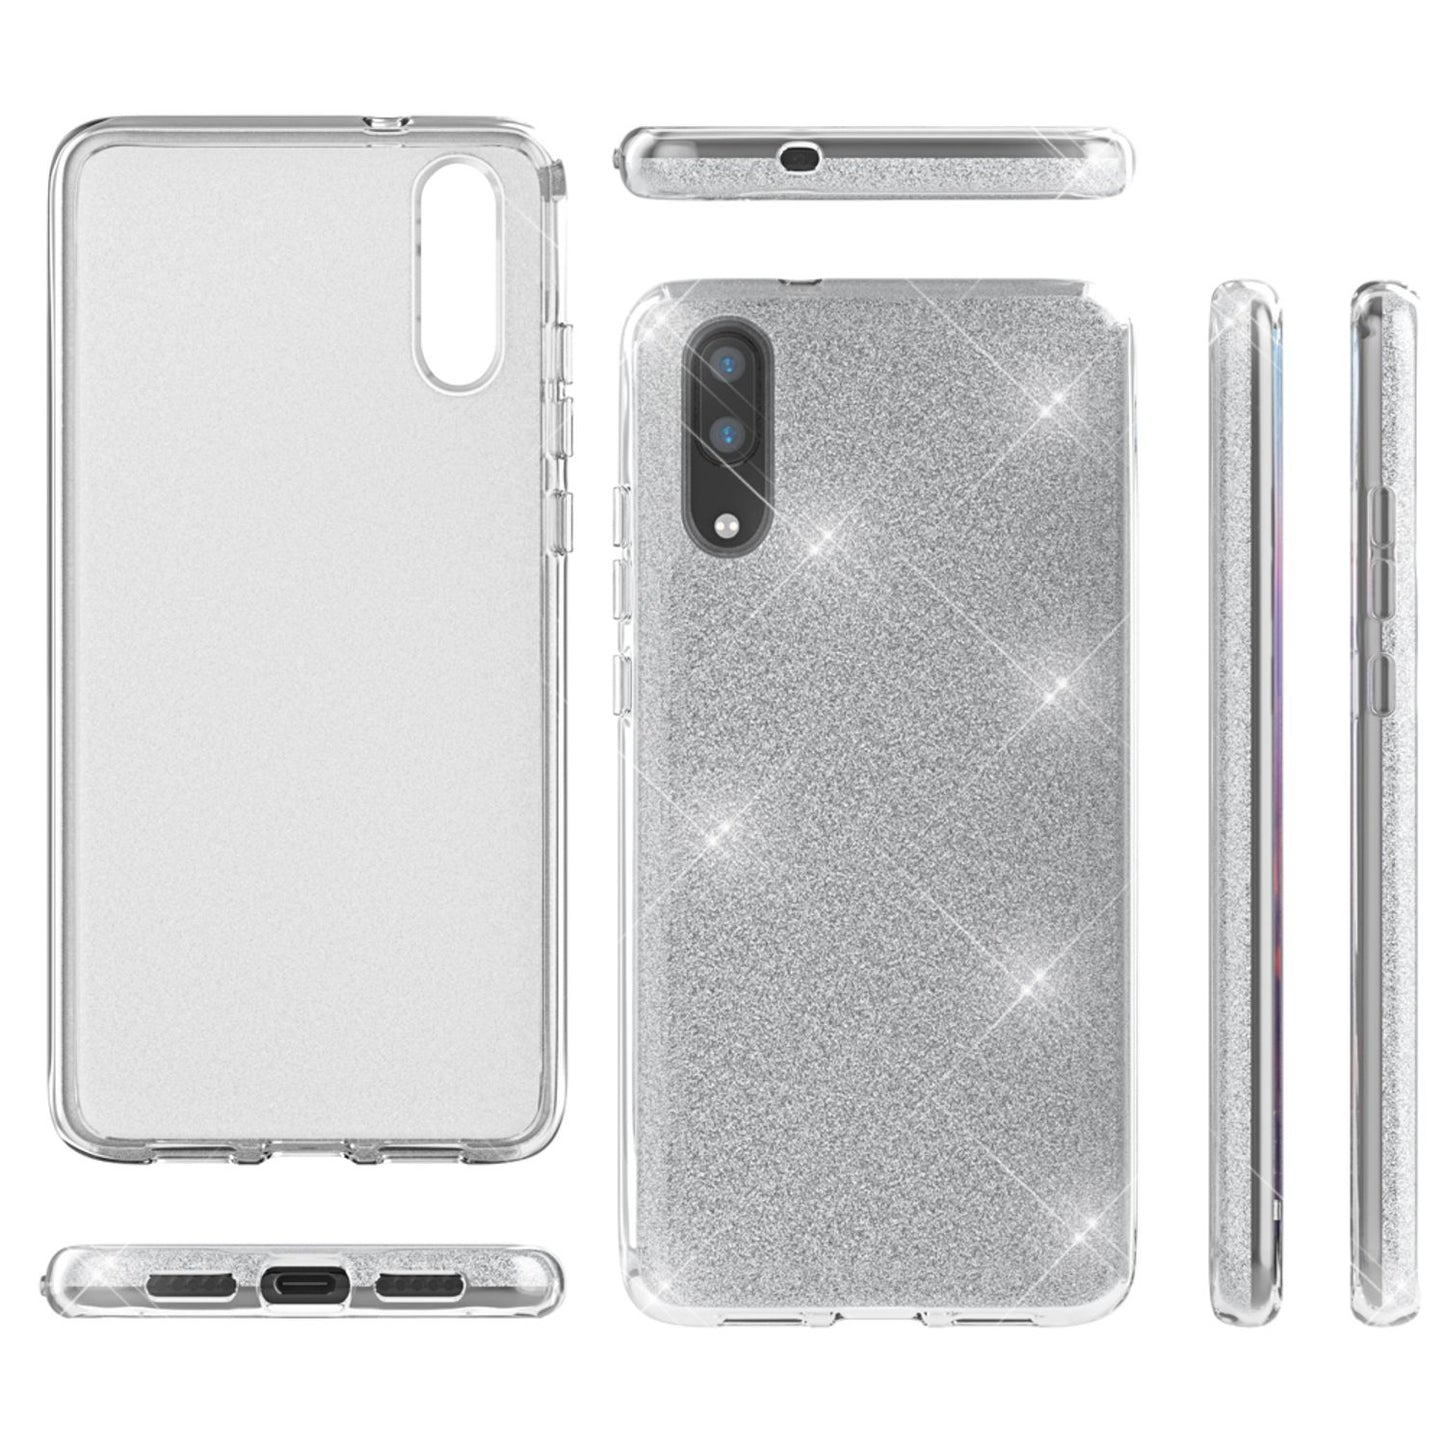 Huawei P20 Handy Hülle von NALIA, Glitzer Silikon Cover Case Schutz Glitter